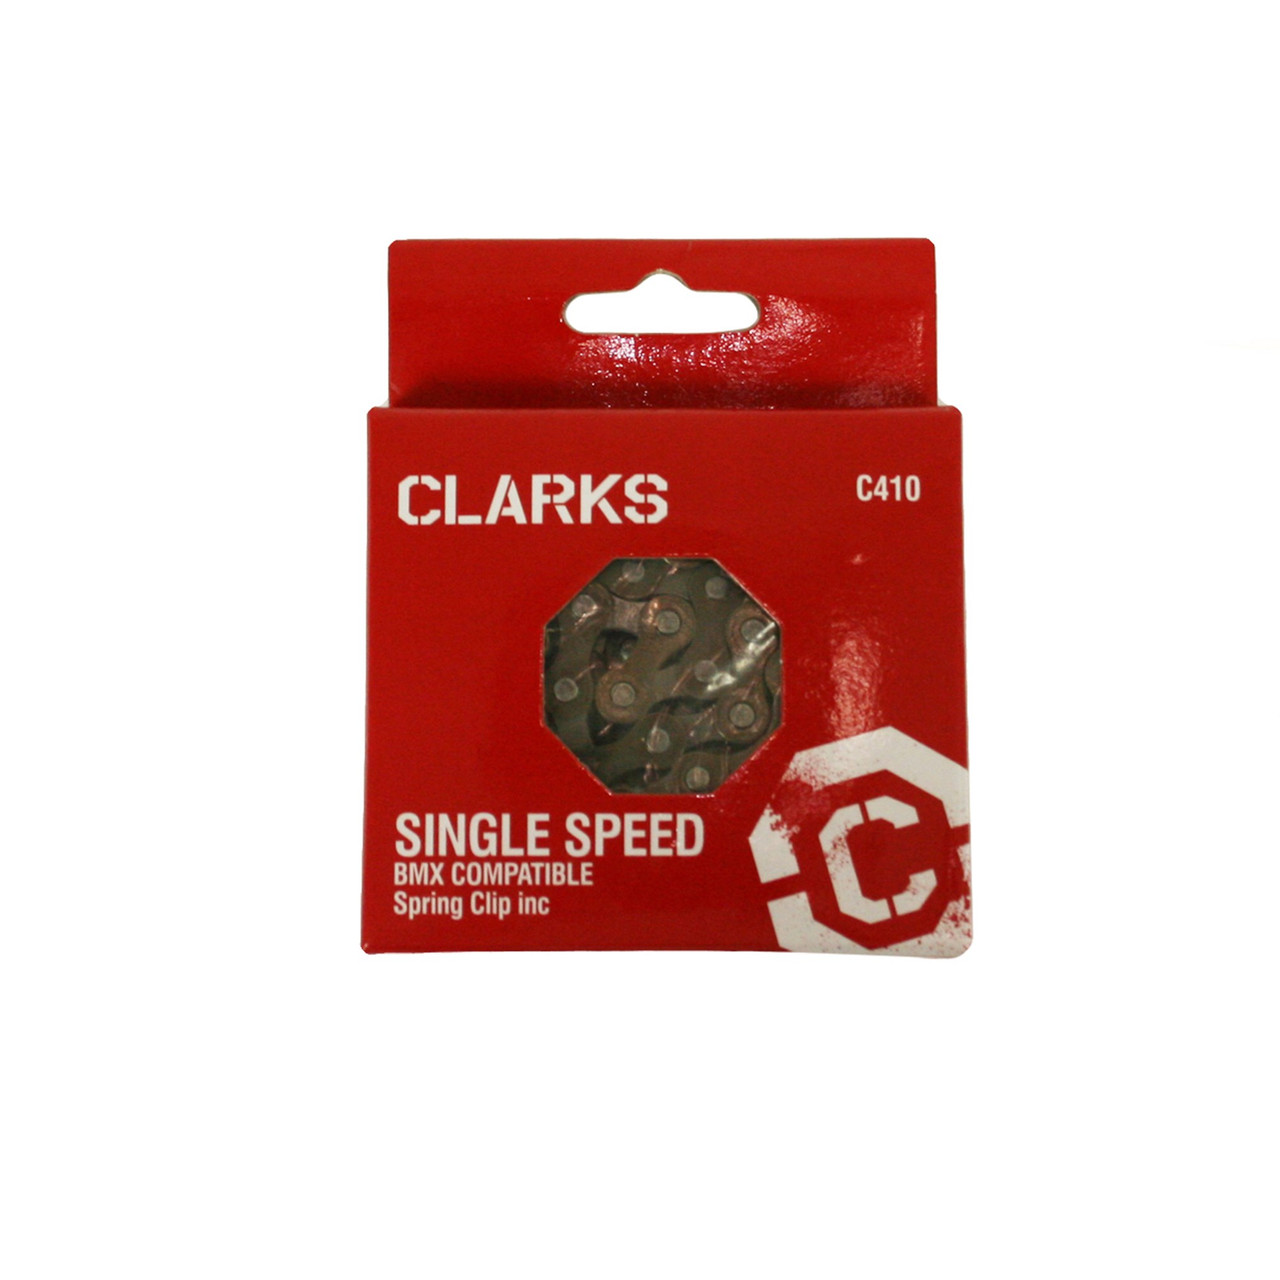 Clarks Single Speed Fixie BMX 1/2 x 1/8 Chain 112 Links inc. Spring Clip